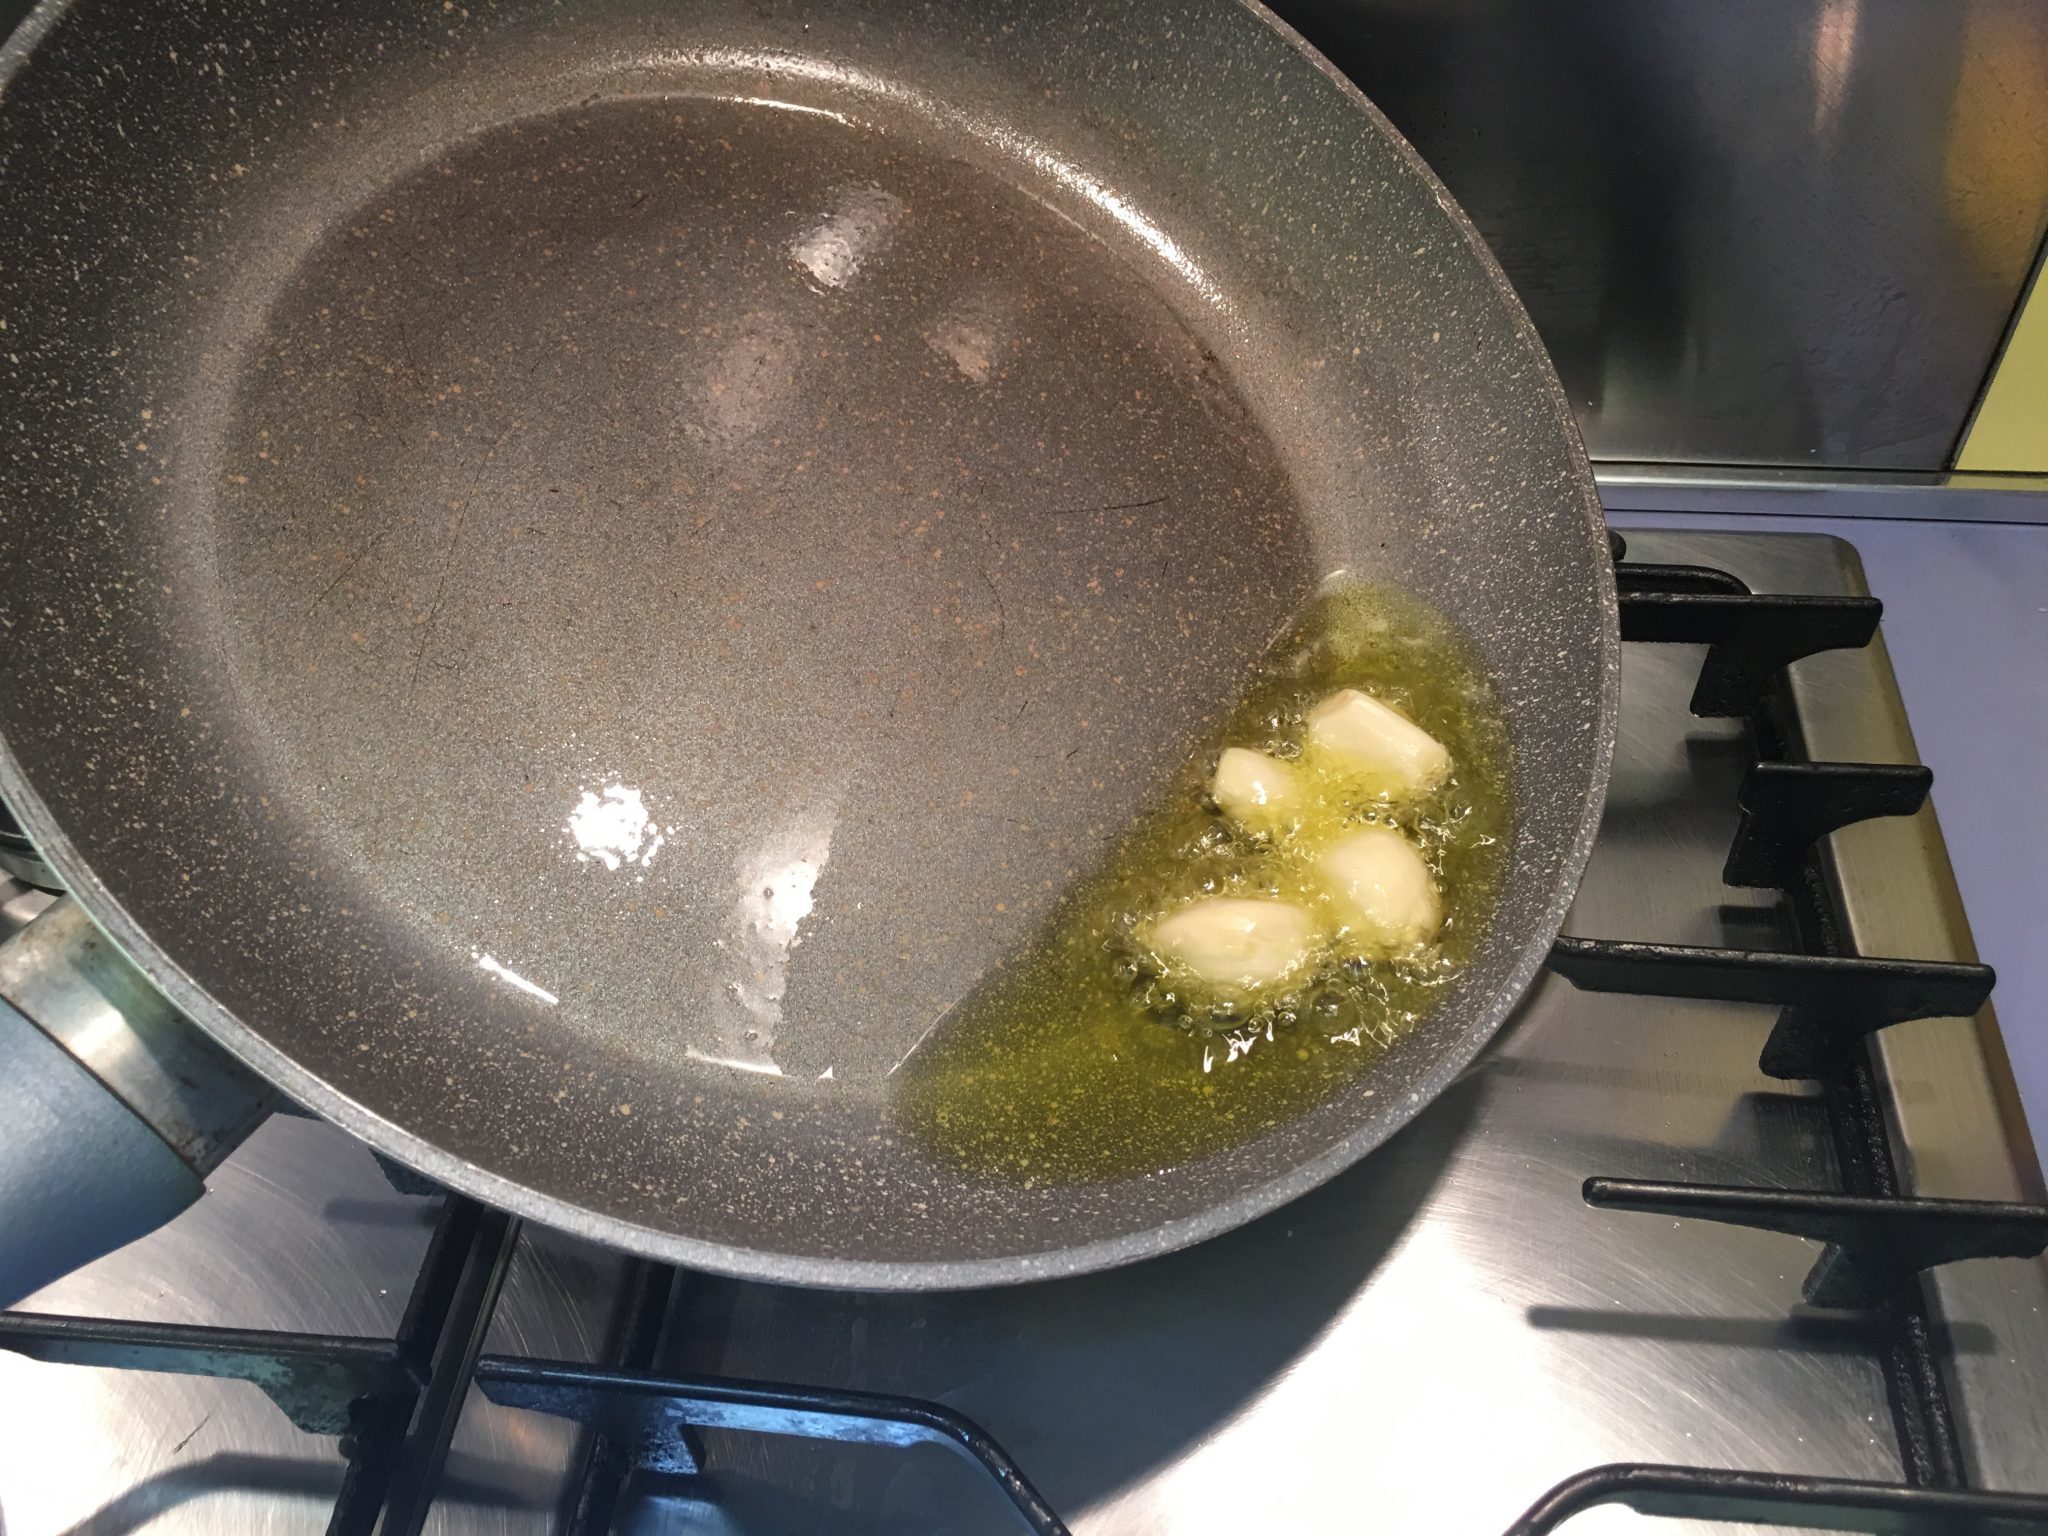 Spaghetti con pomodorini secchi e mollica - l'aglio a soffriggere nell'olio